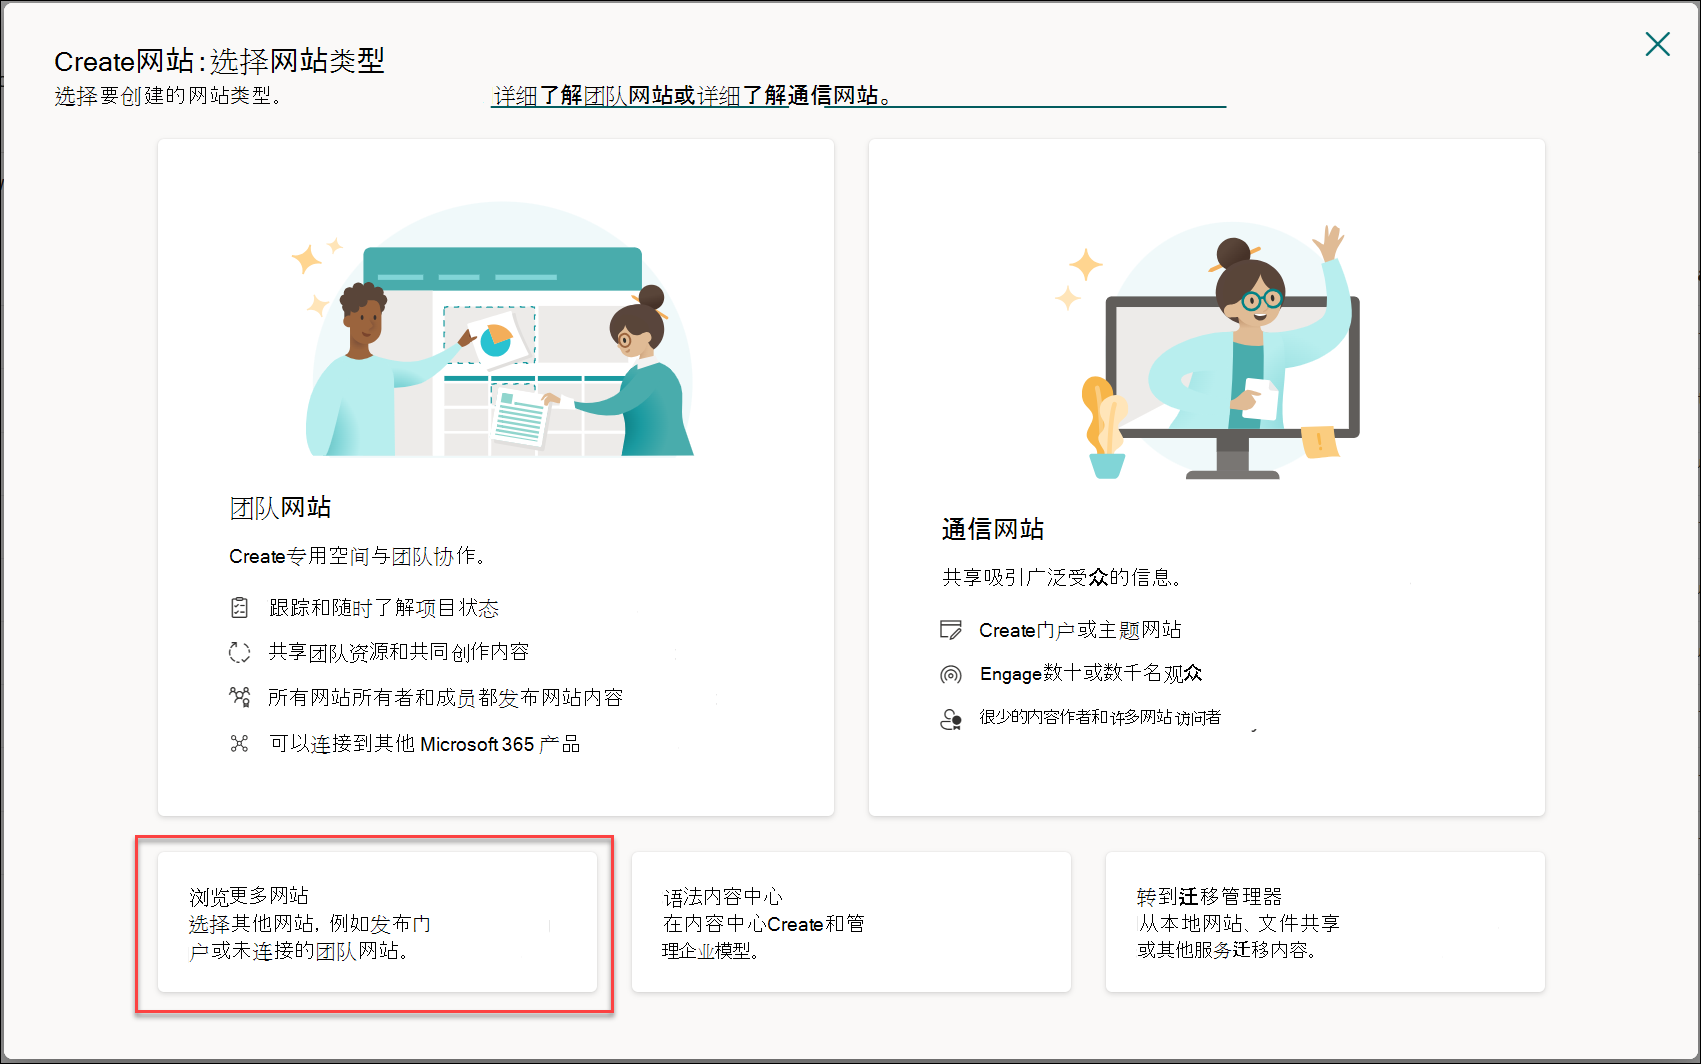 网站创建面板的图像，其中突出显示了管理员控制。